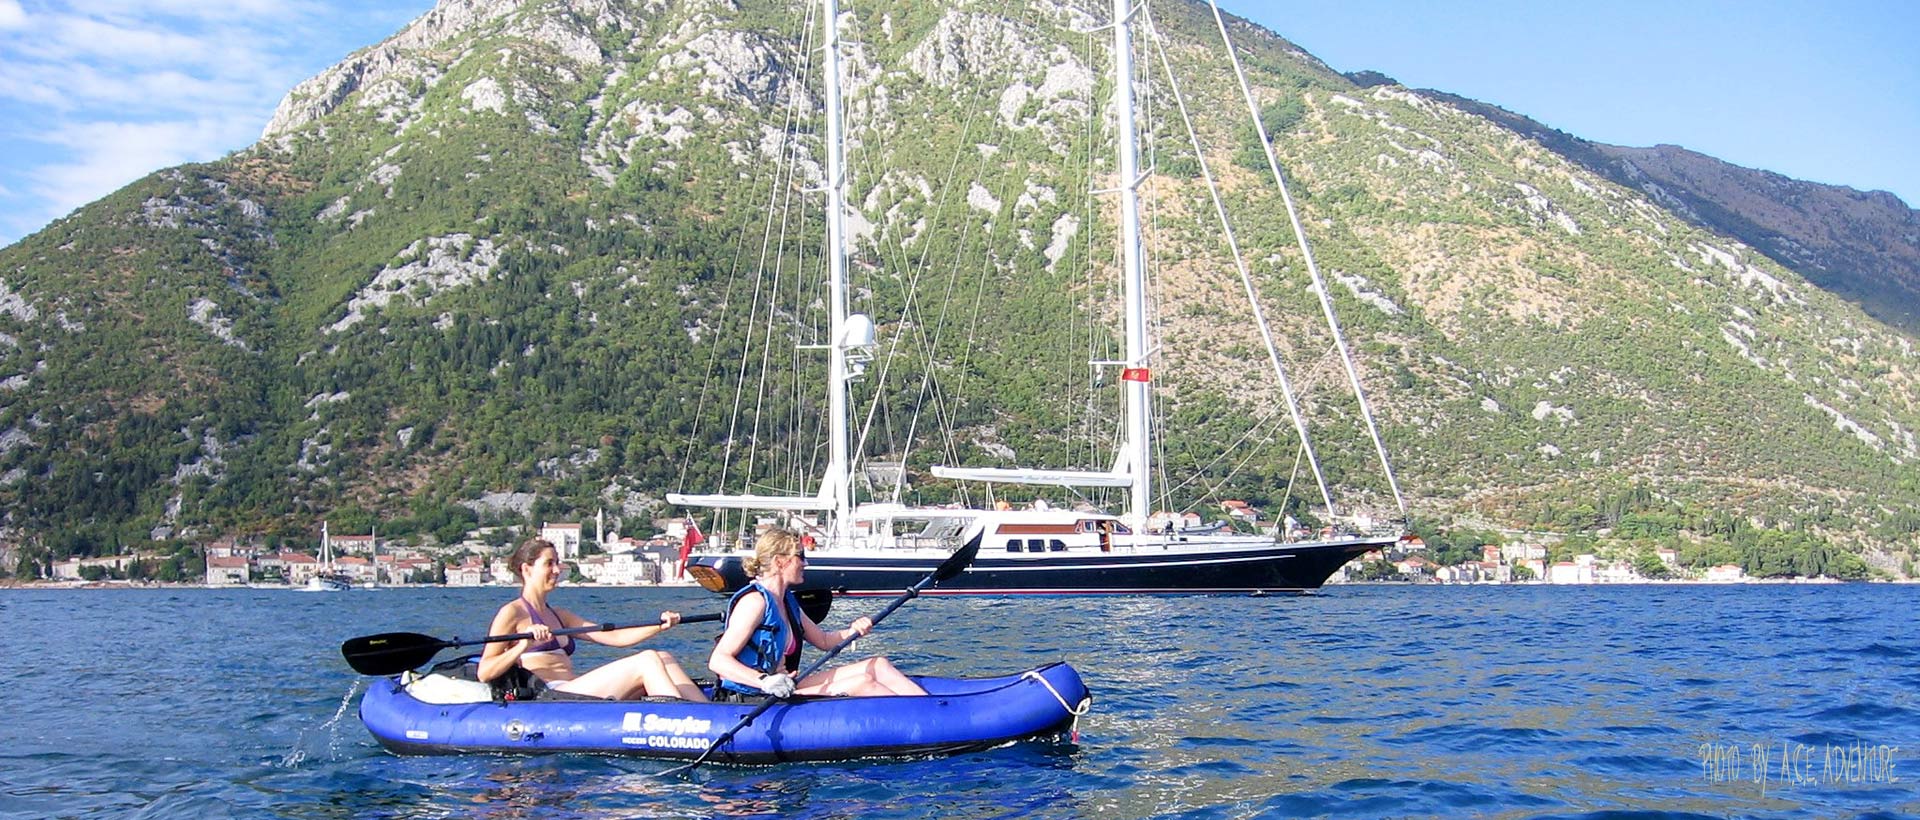 Luxury Family Holiday in Montenegro - Kotor bay kayaking